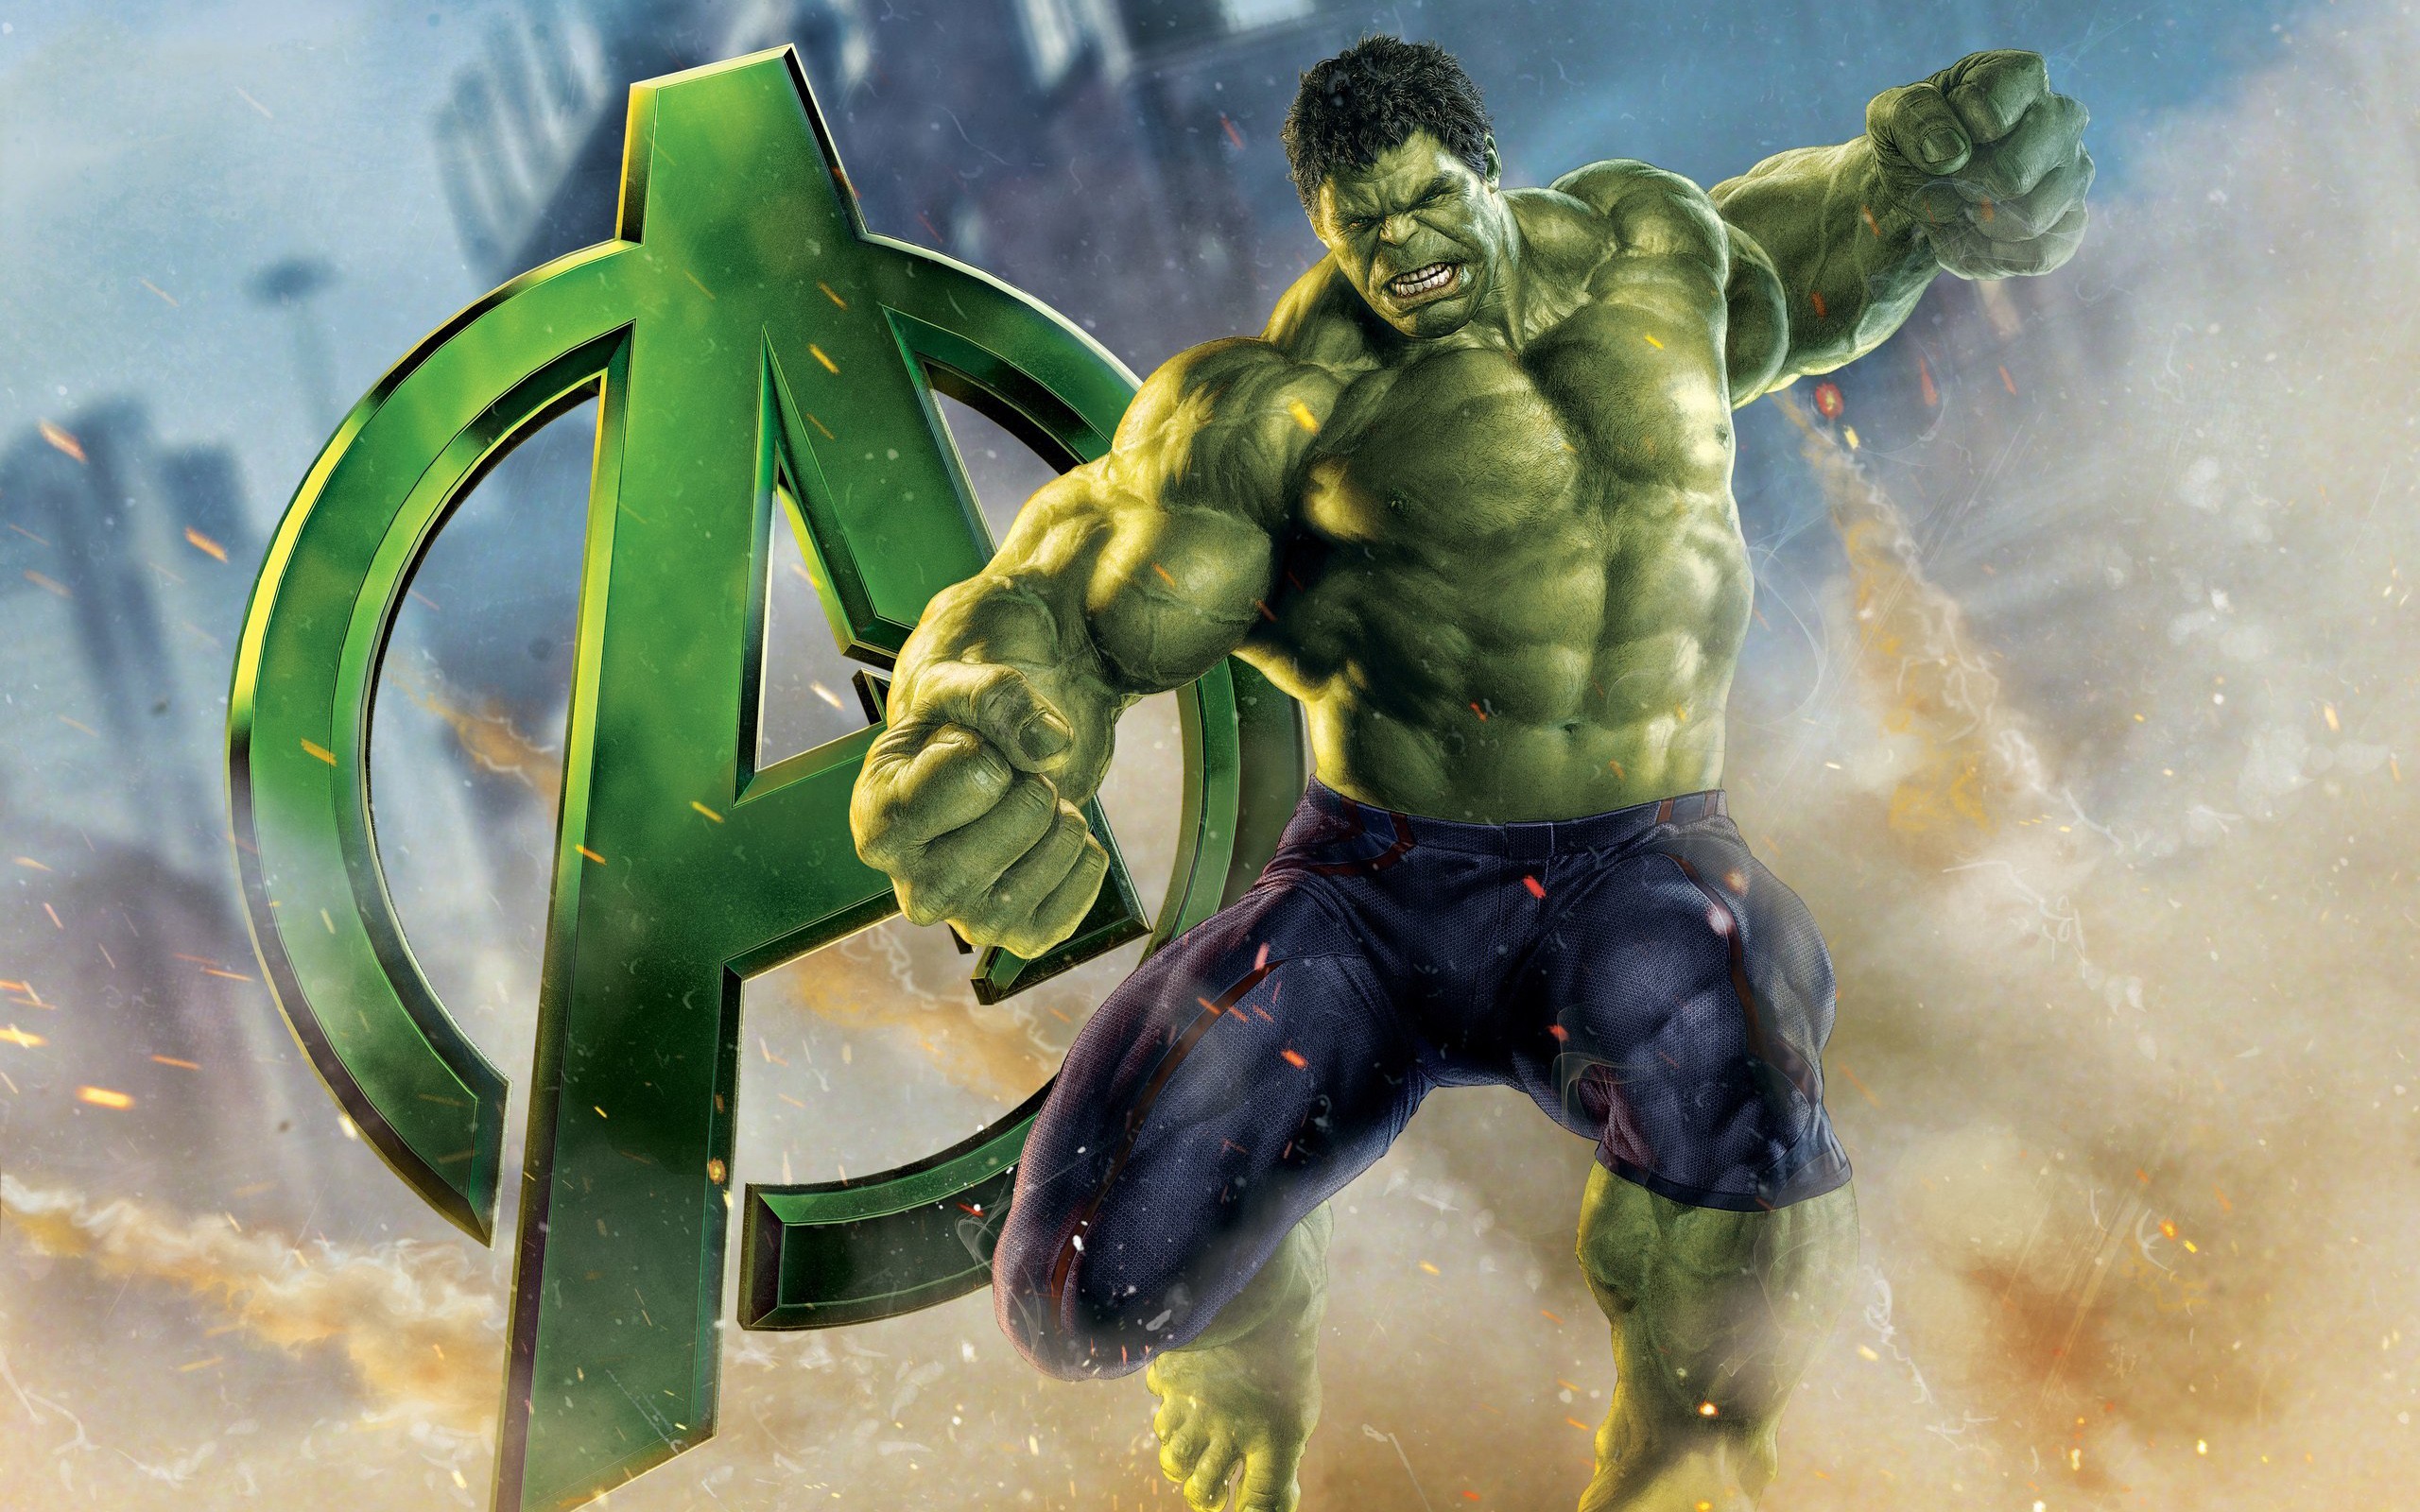 47+] Hulk HD Wallpapers 1080p - WallpaperSafari